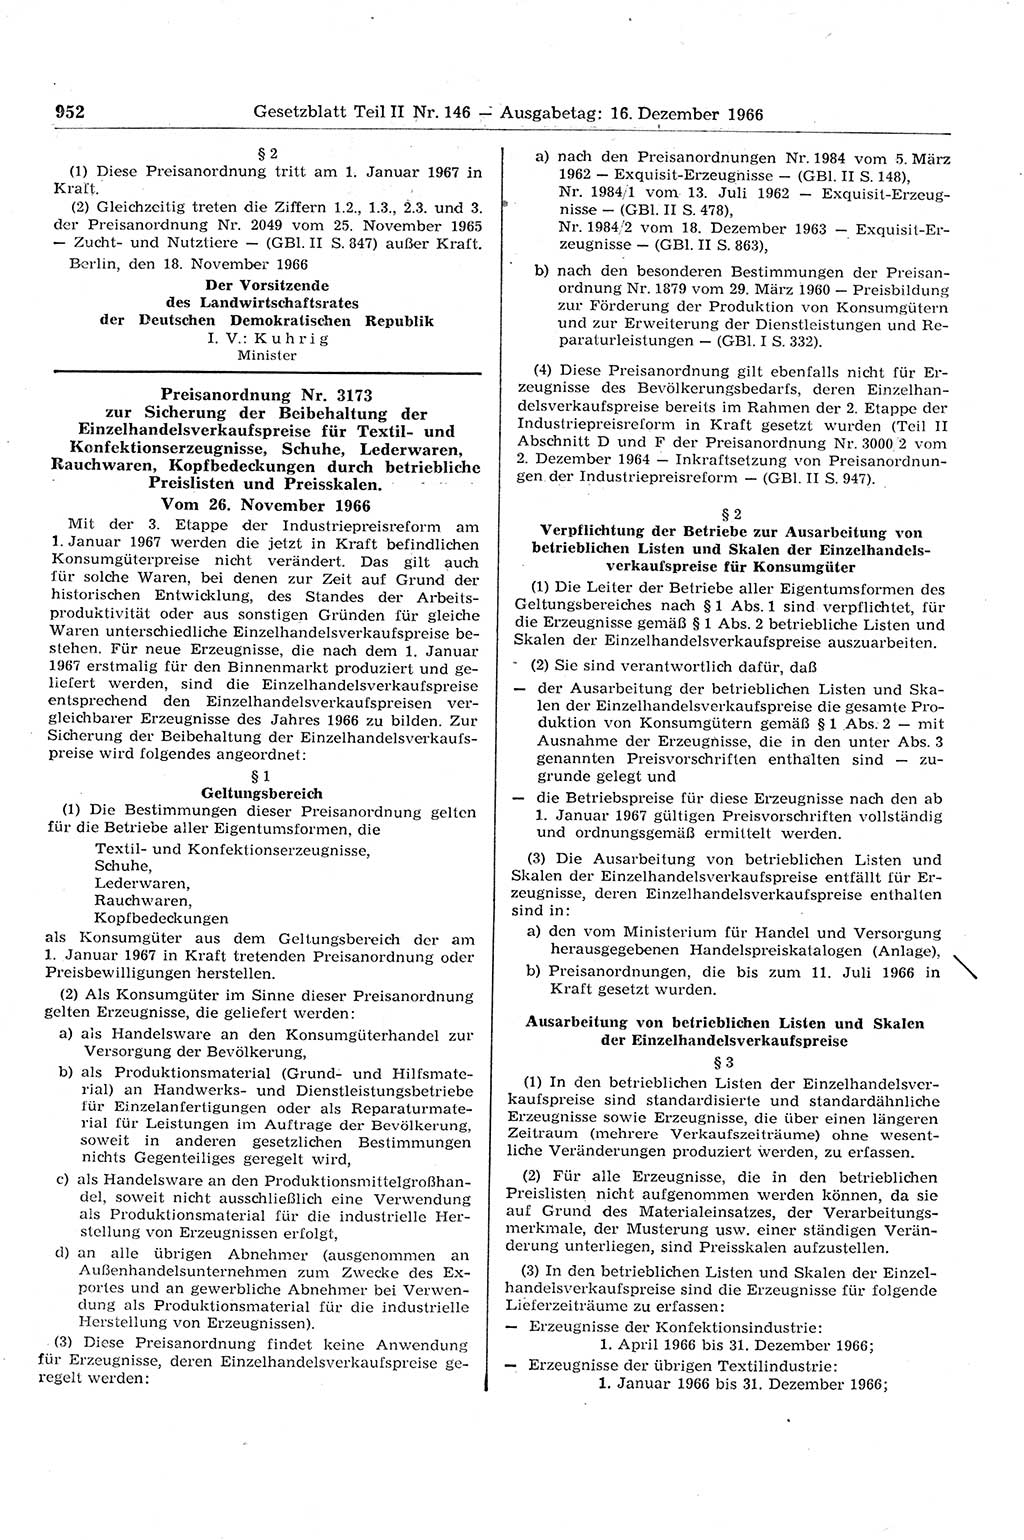 Gesetzblatt (GBl.) der Deutschen Demokratischen Republik (DDR) Teil ⅠⅠ 1966, Seite 952 (GBl. DDR ⅠⅠ 1966, S. 952)